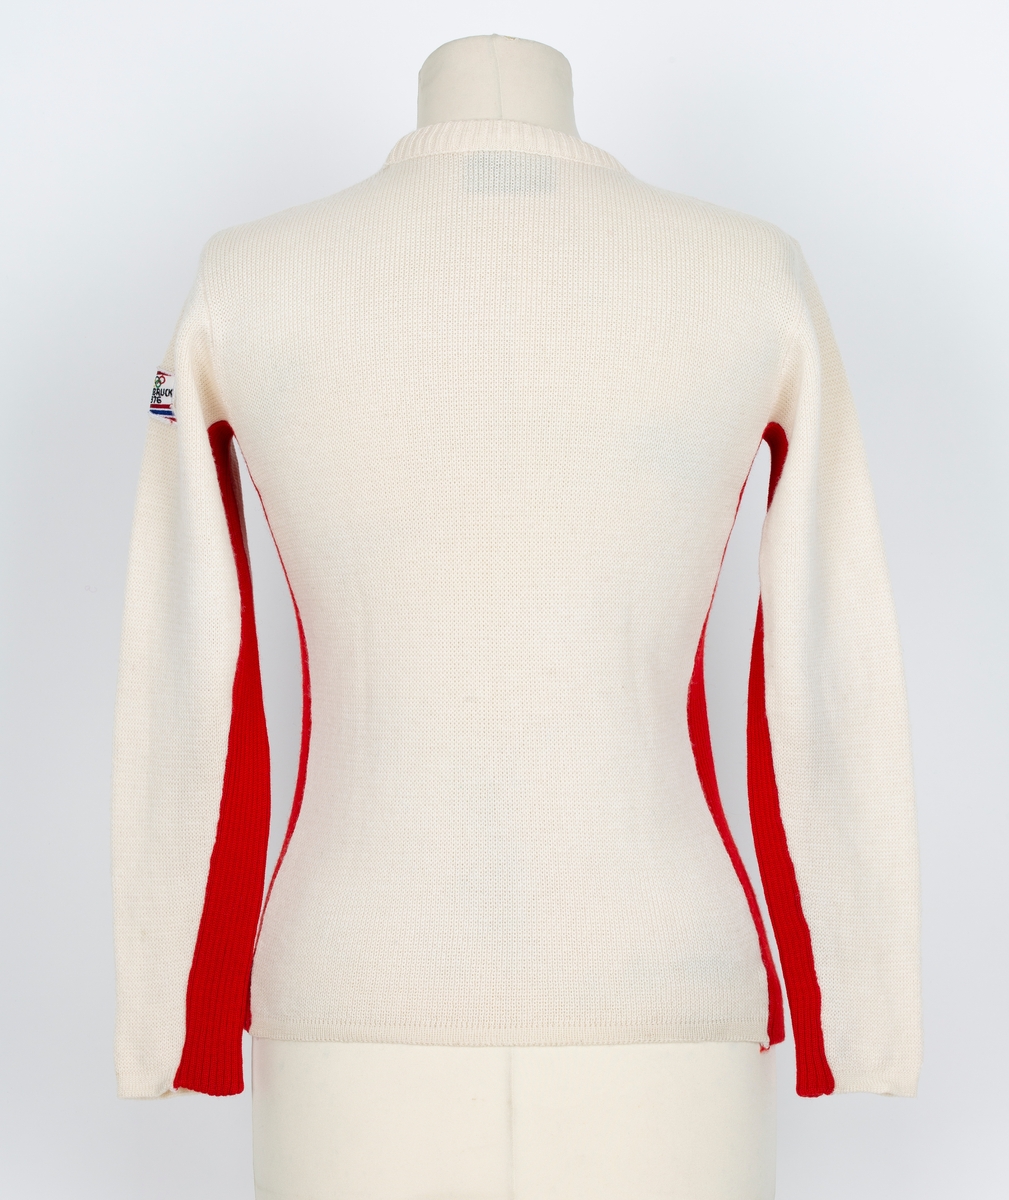 Genser. OL genser fra Insbruck 1976. Lange ermer. Rund hals. Hvit, rød og blå i felter og stripet.
Merke med 5 olympiske ringer og Insbruck 1976 påsydd ermet.